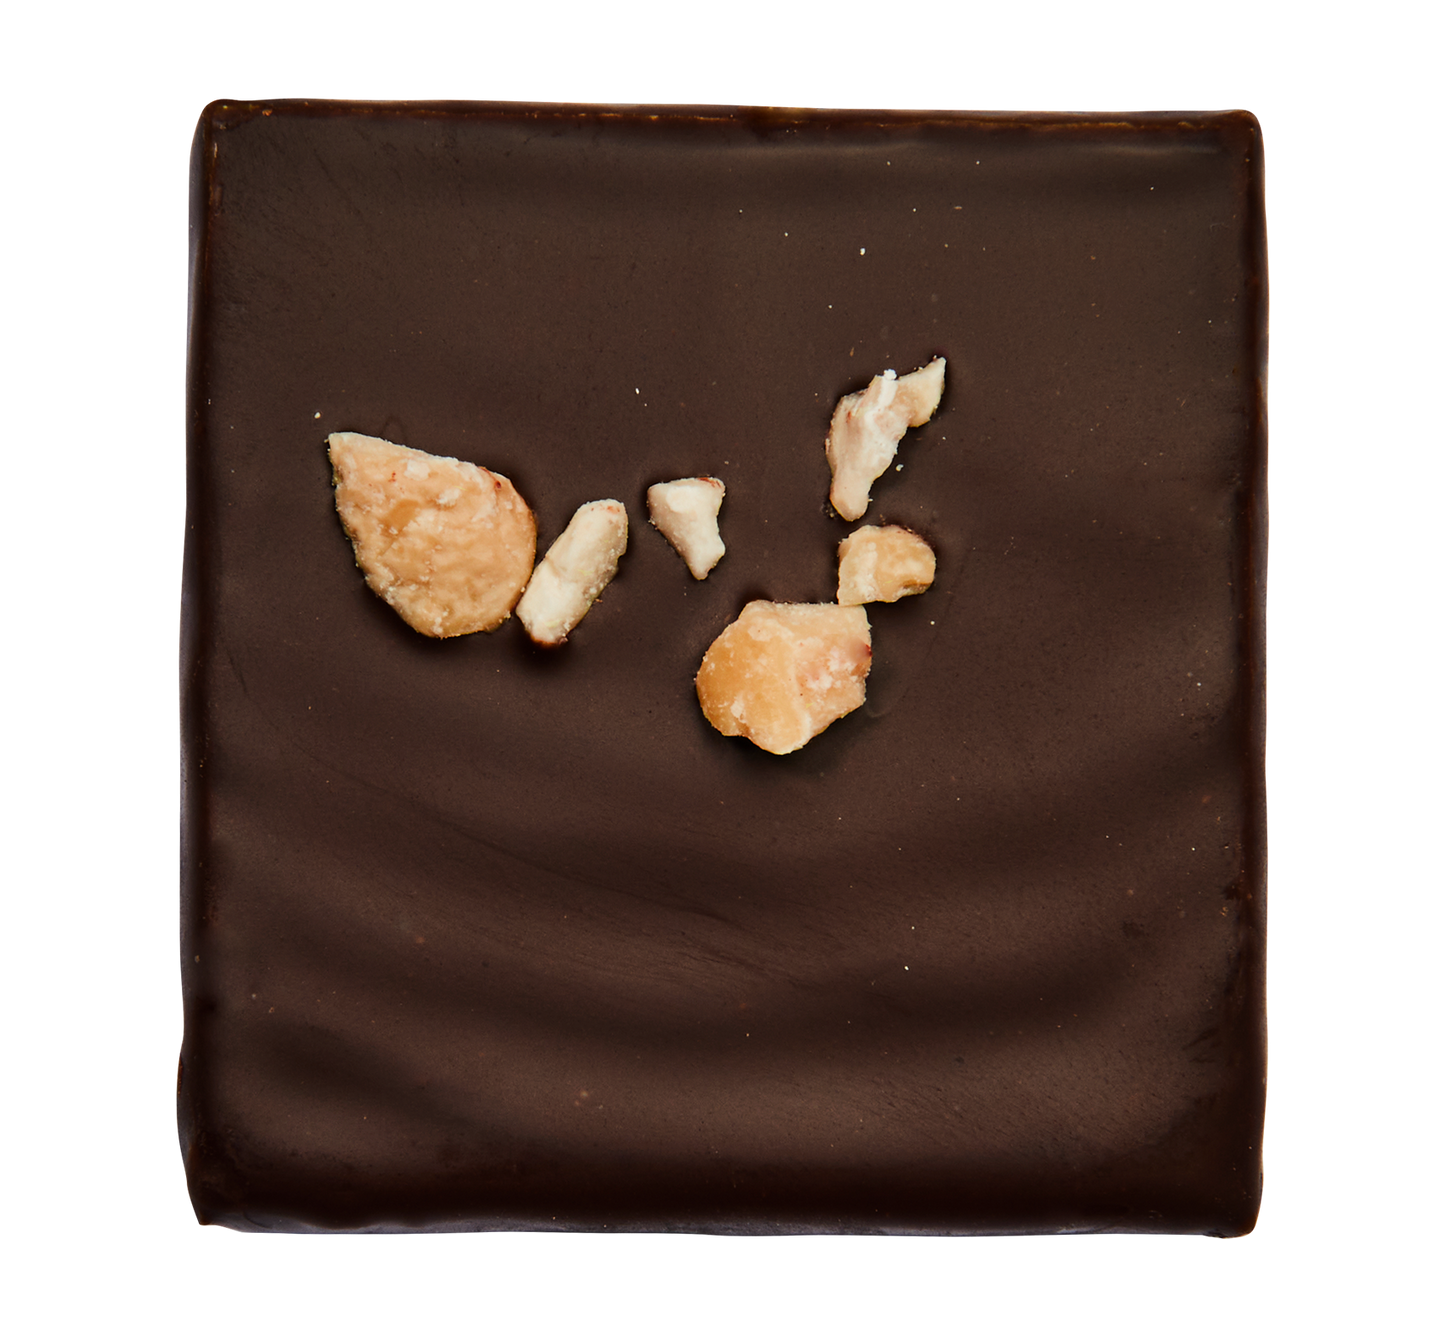 Cosmic Dealer - High Vibes Nut Butter Chocolate: Cashew & Matcha